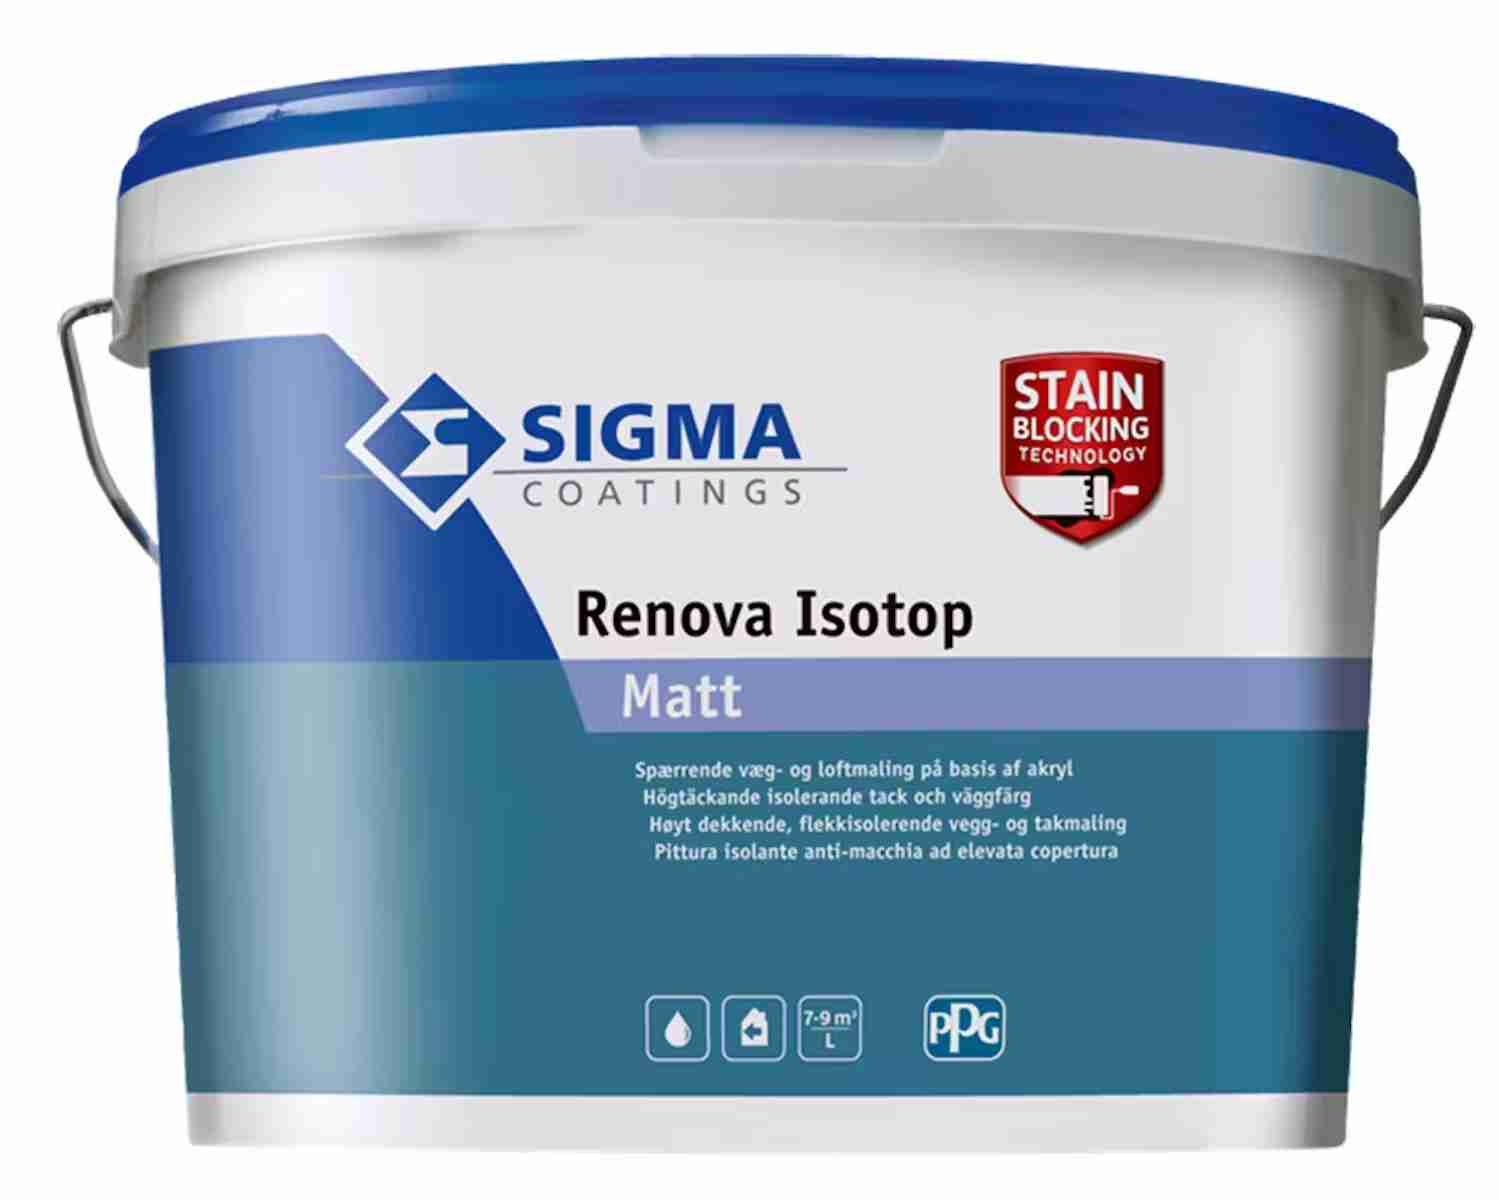 Bästa väggfärgen - Spärrfärg Tak/Vägg Sigma Coatings Renova Isotop